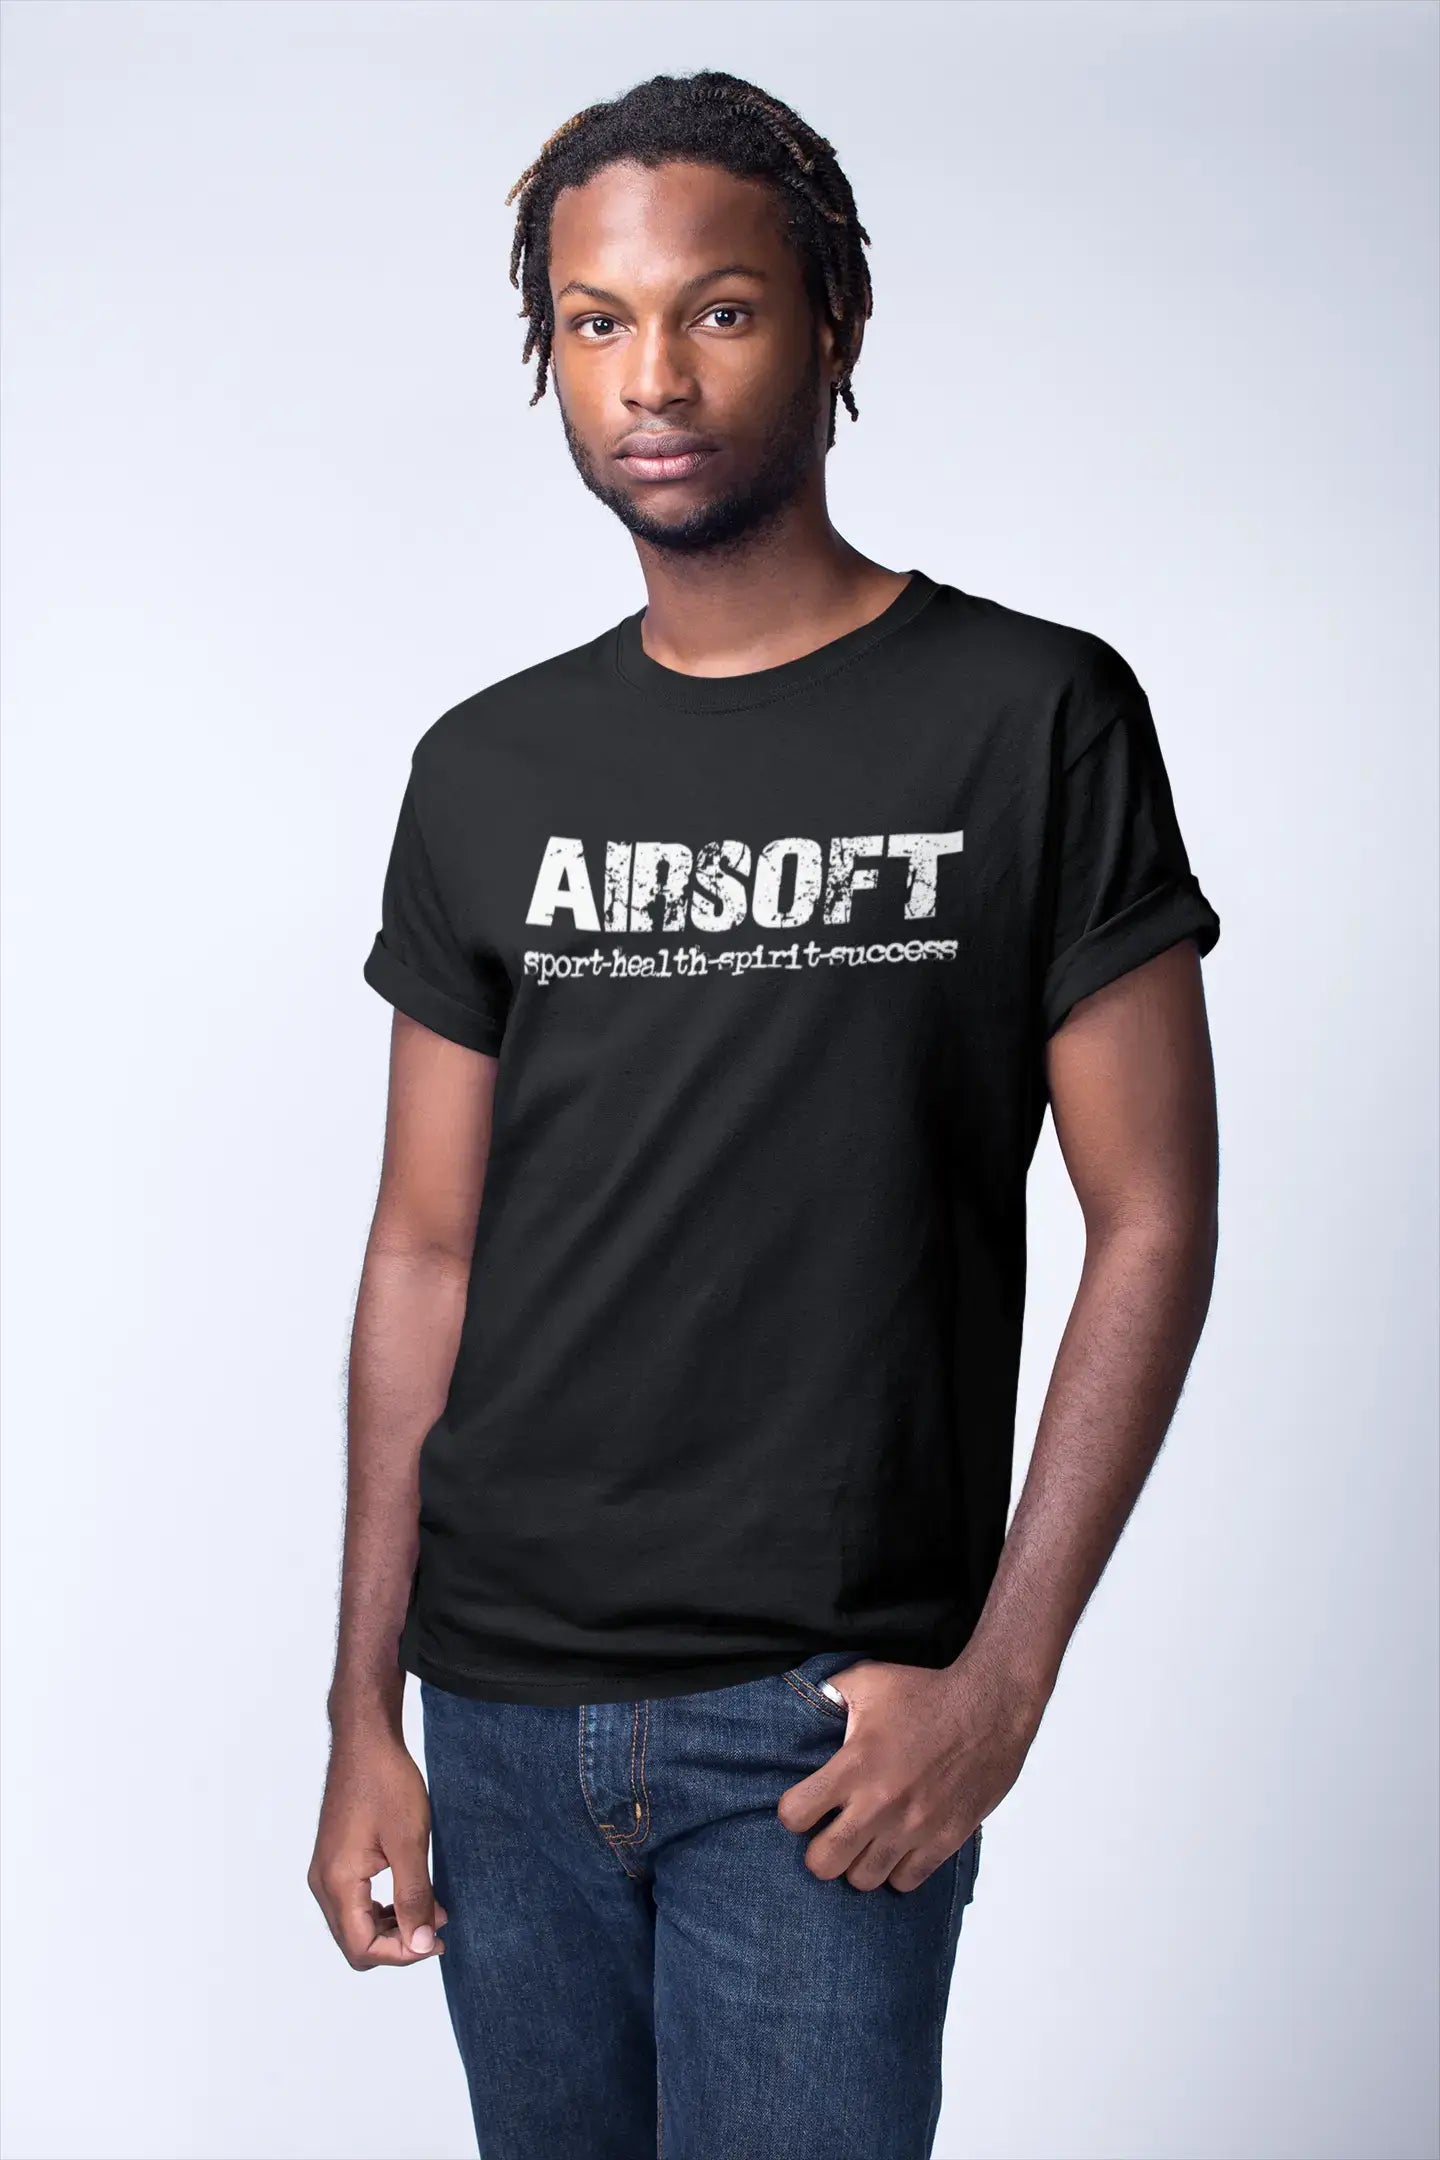 airsoft sport-health-spirit-success Men's Short Sleeve Round Neck T-shirt 00079